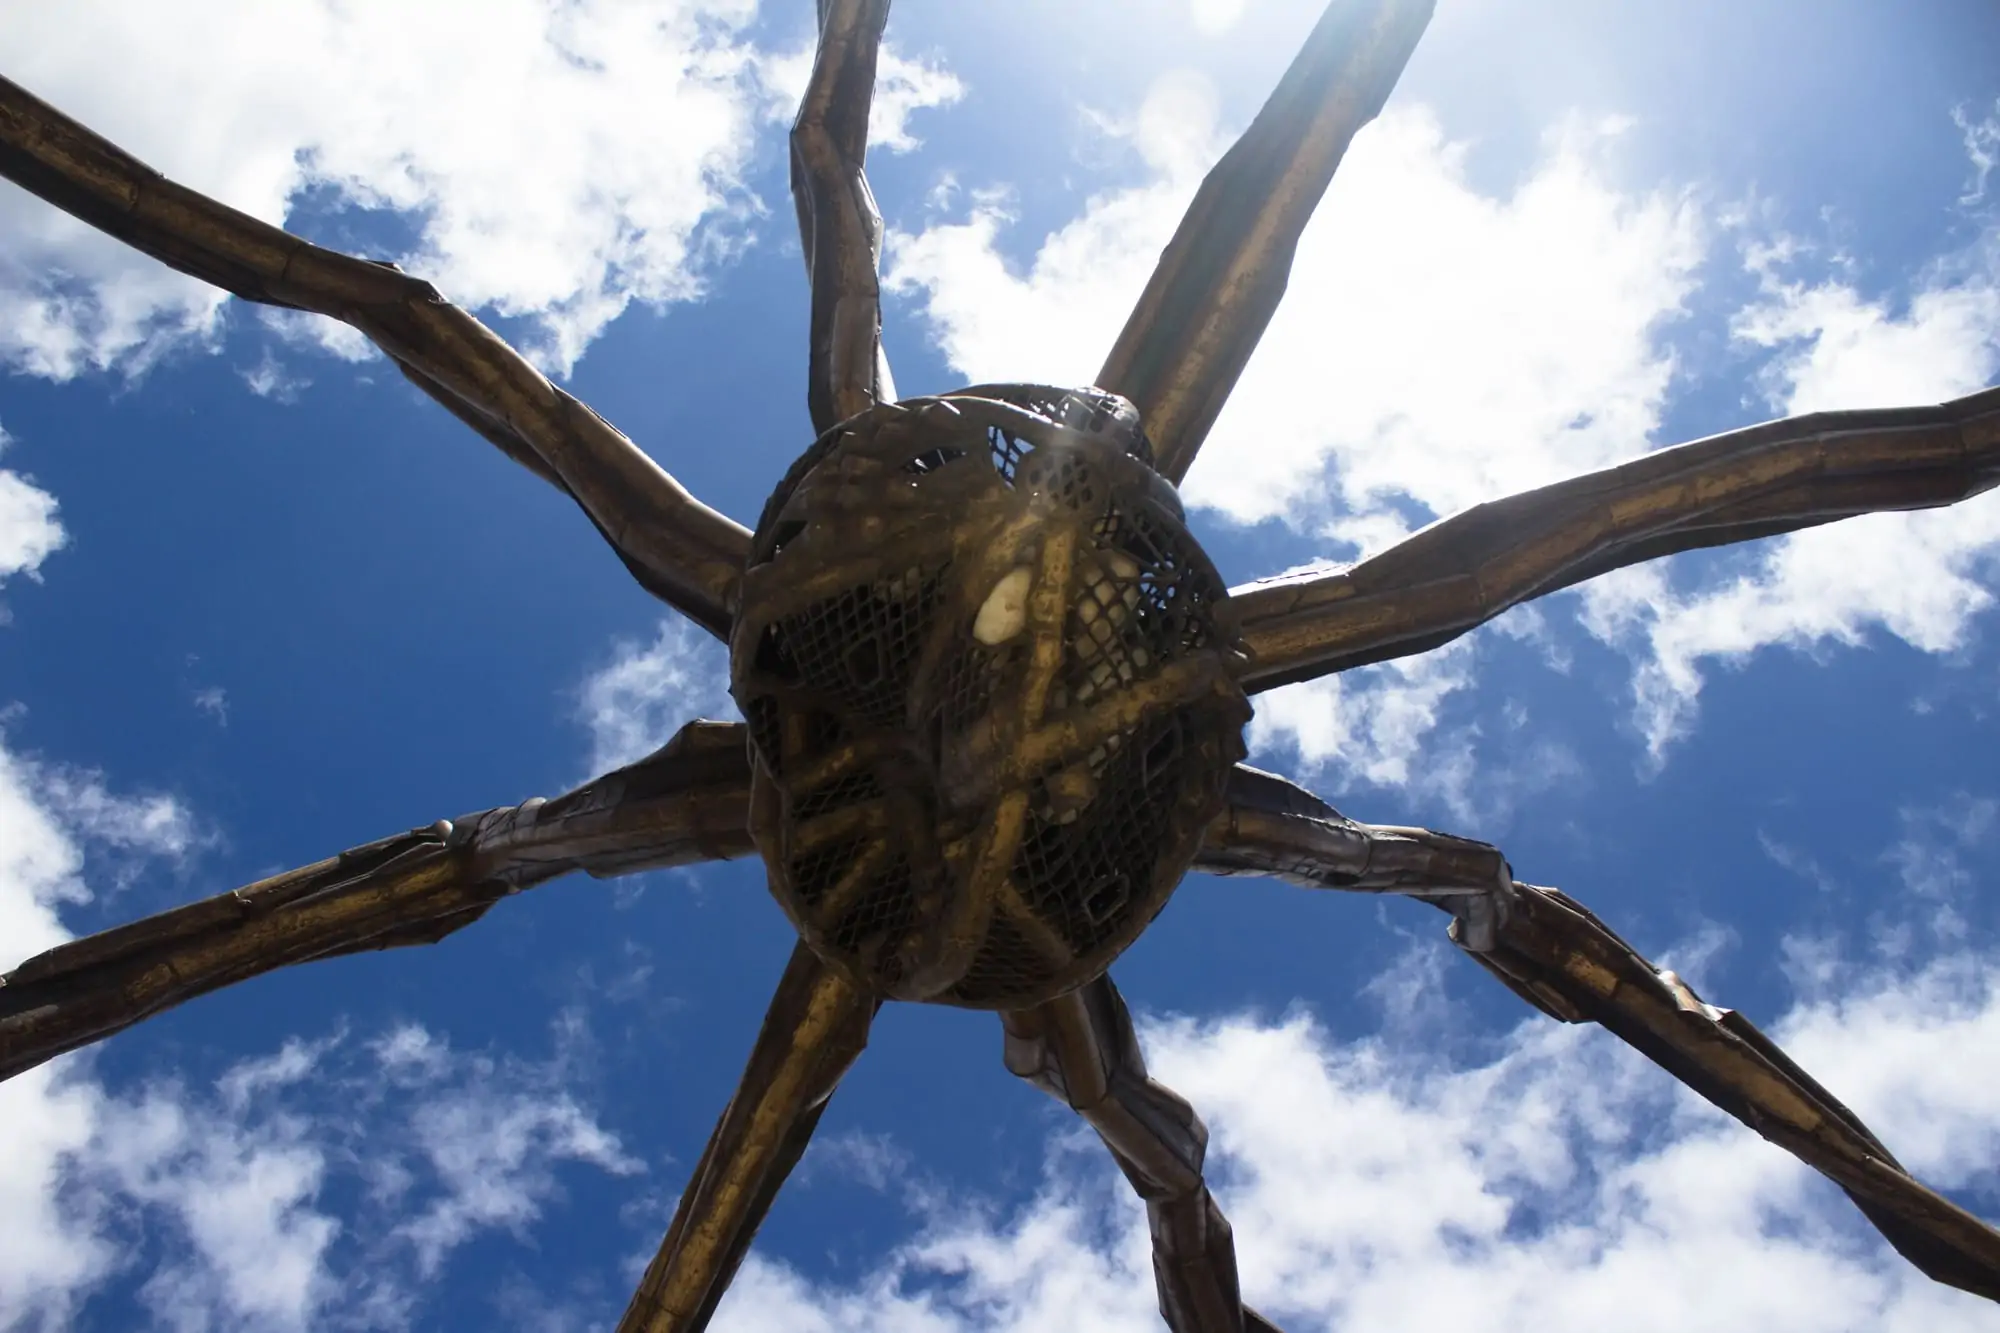 Guggenheim Spider